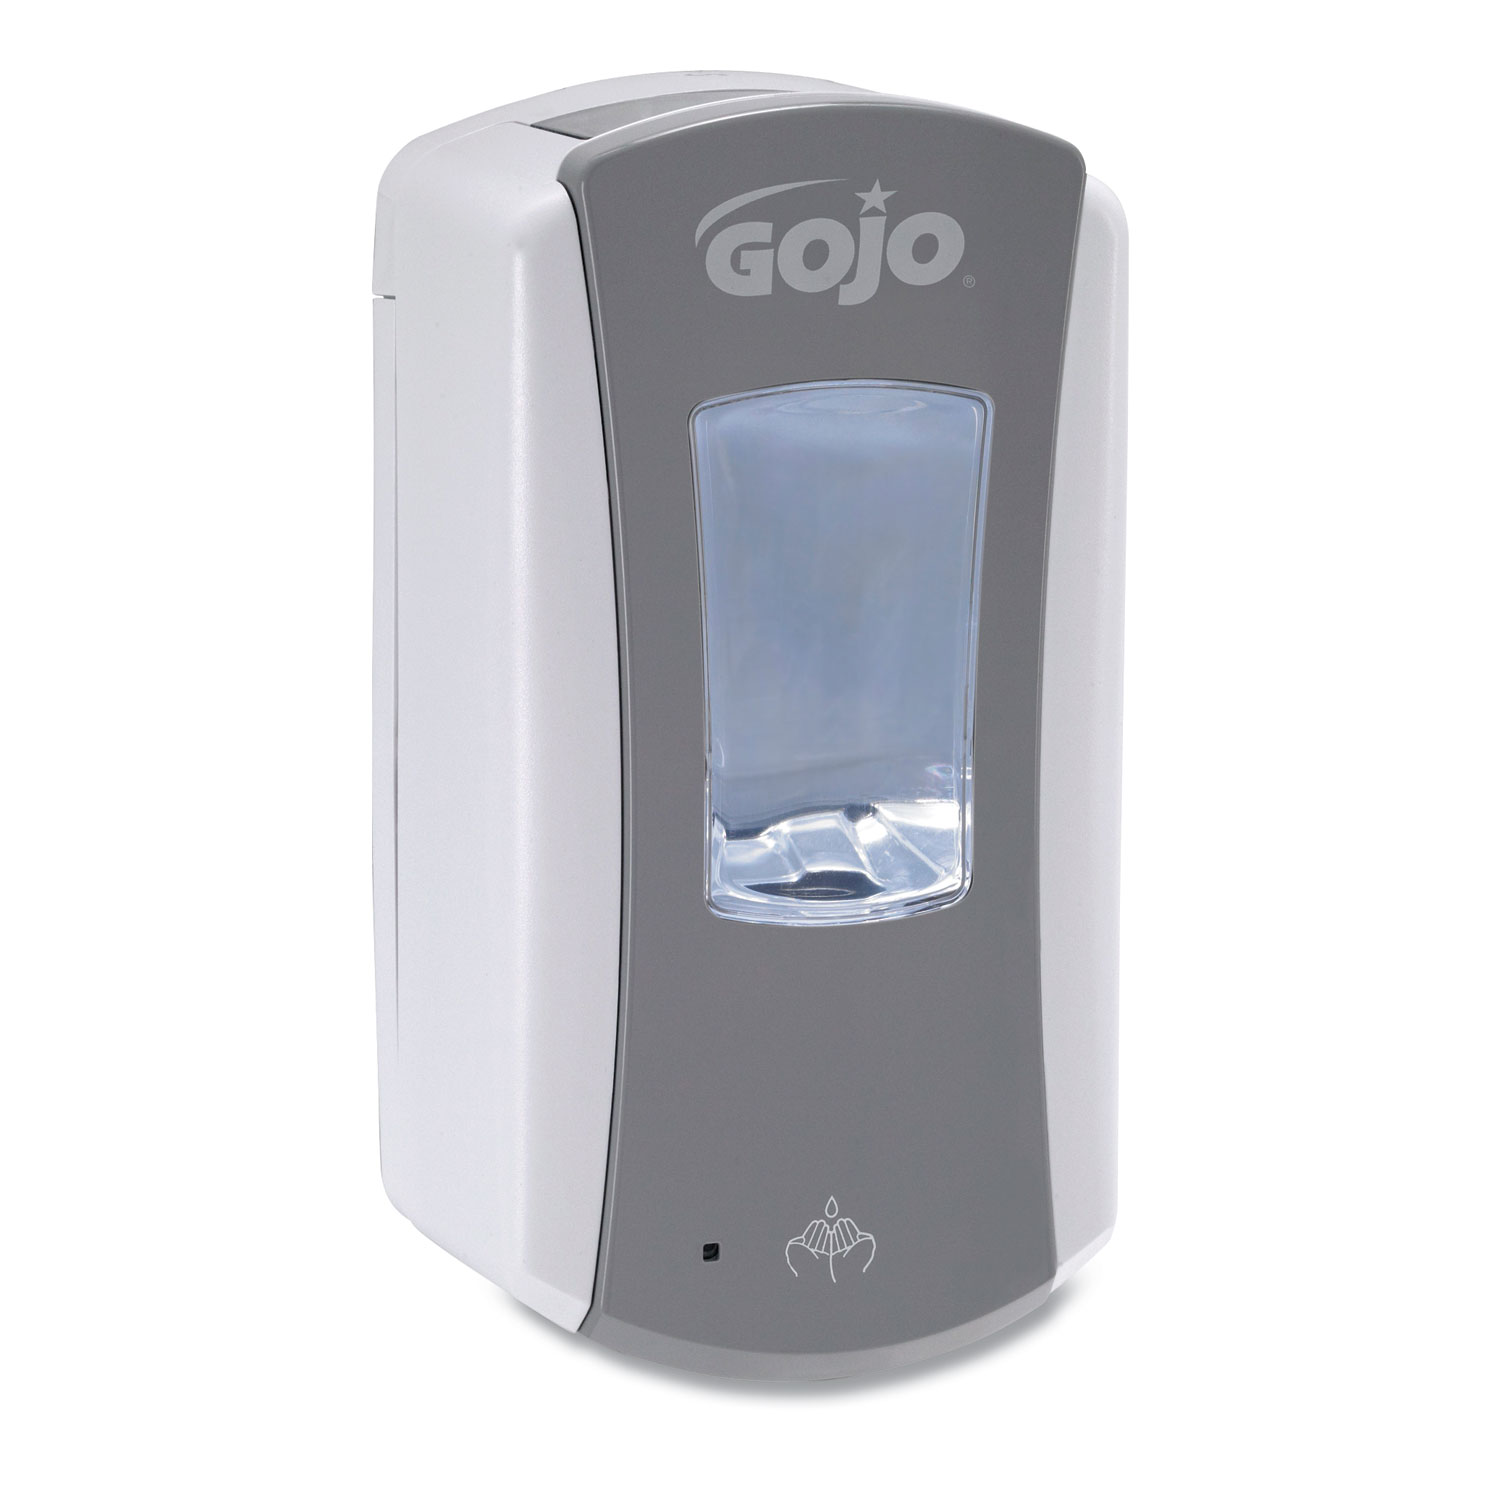  GOJO 1984-04 LTX-12 Touch-Free Dispenser, 1200 mL, 5.25 x 3.33 x 10.5, Gray/White (GOJ198404) 